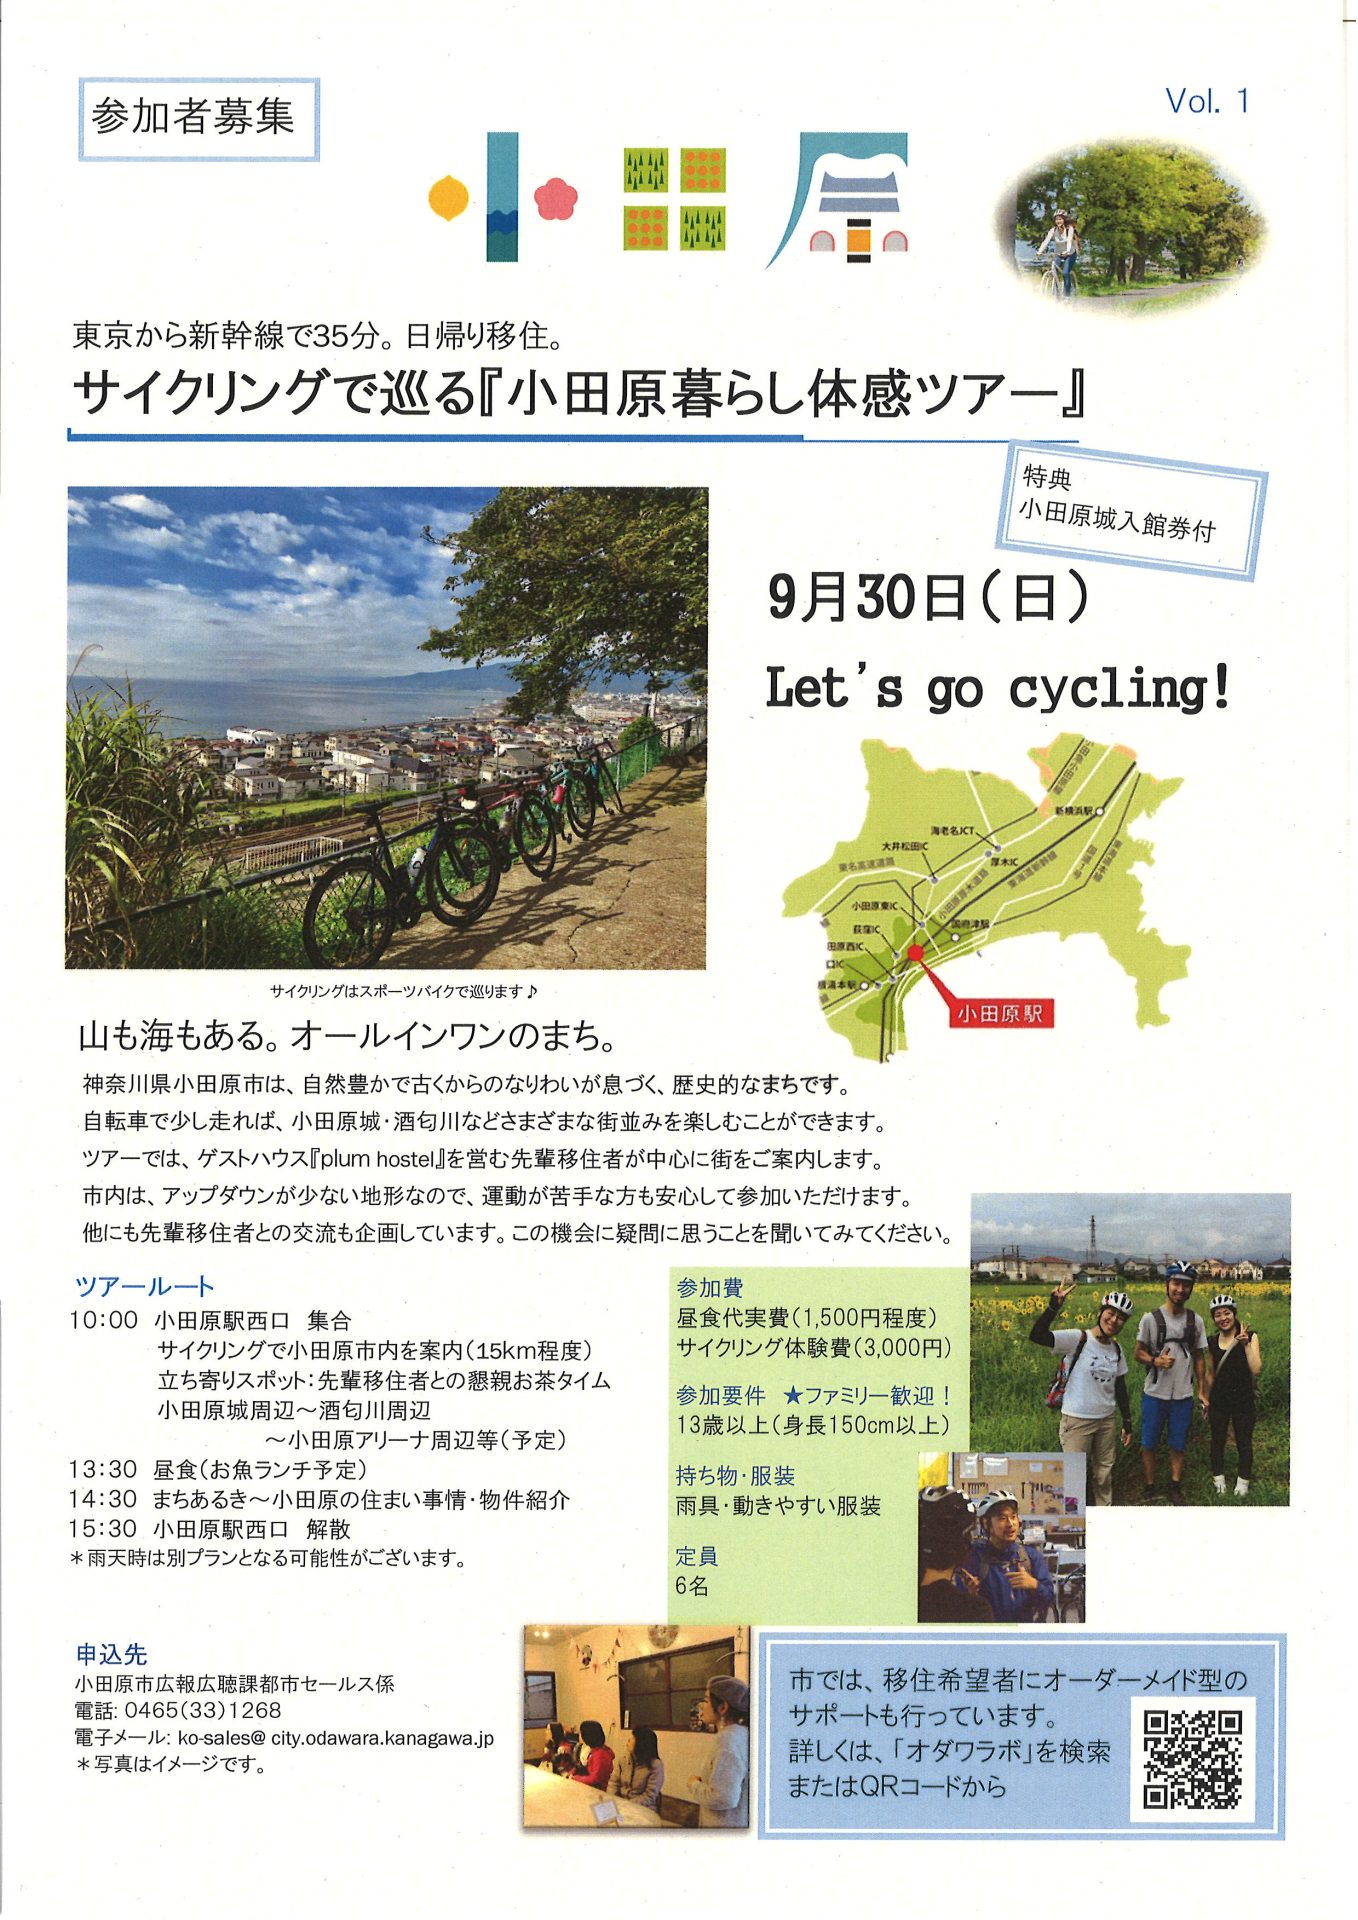 サイクリングで巡る『小田原暮らし体感ツアー』 | 移住関連イベント情報